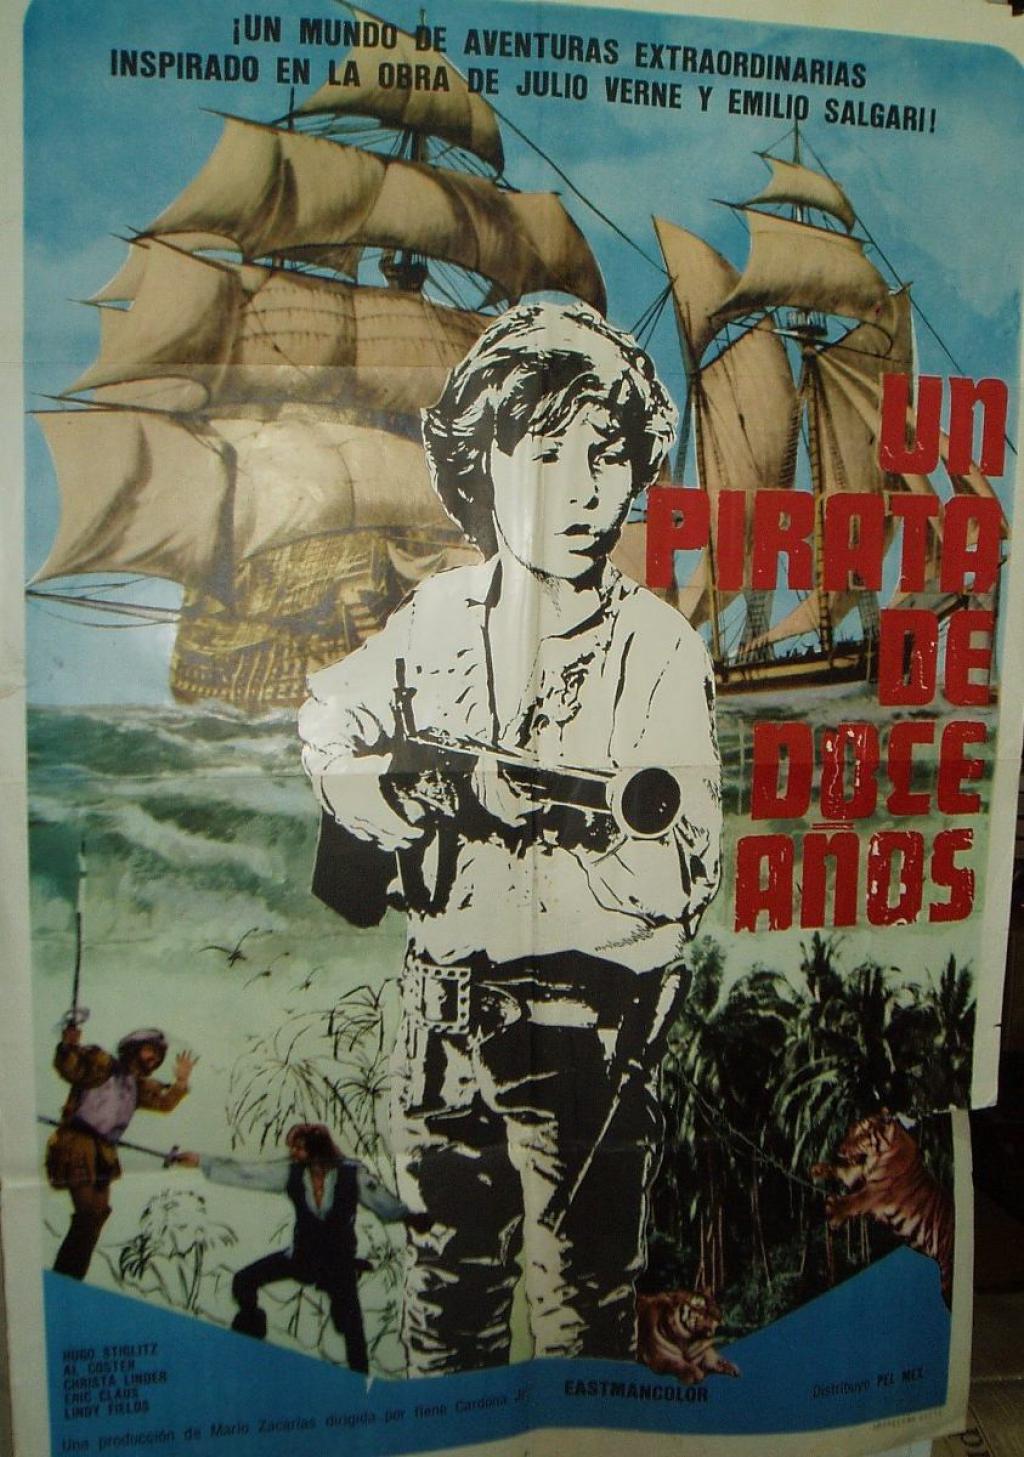 affiche du film Un pirata de doce años